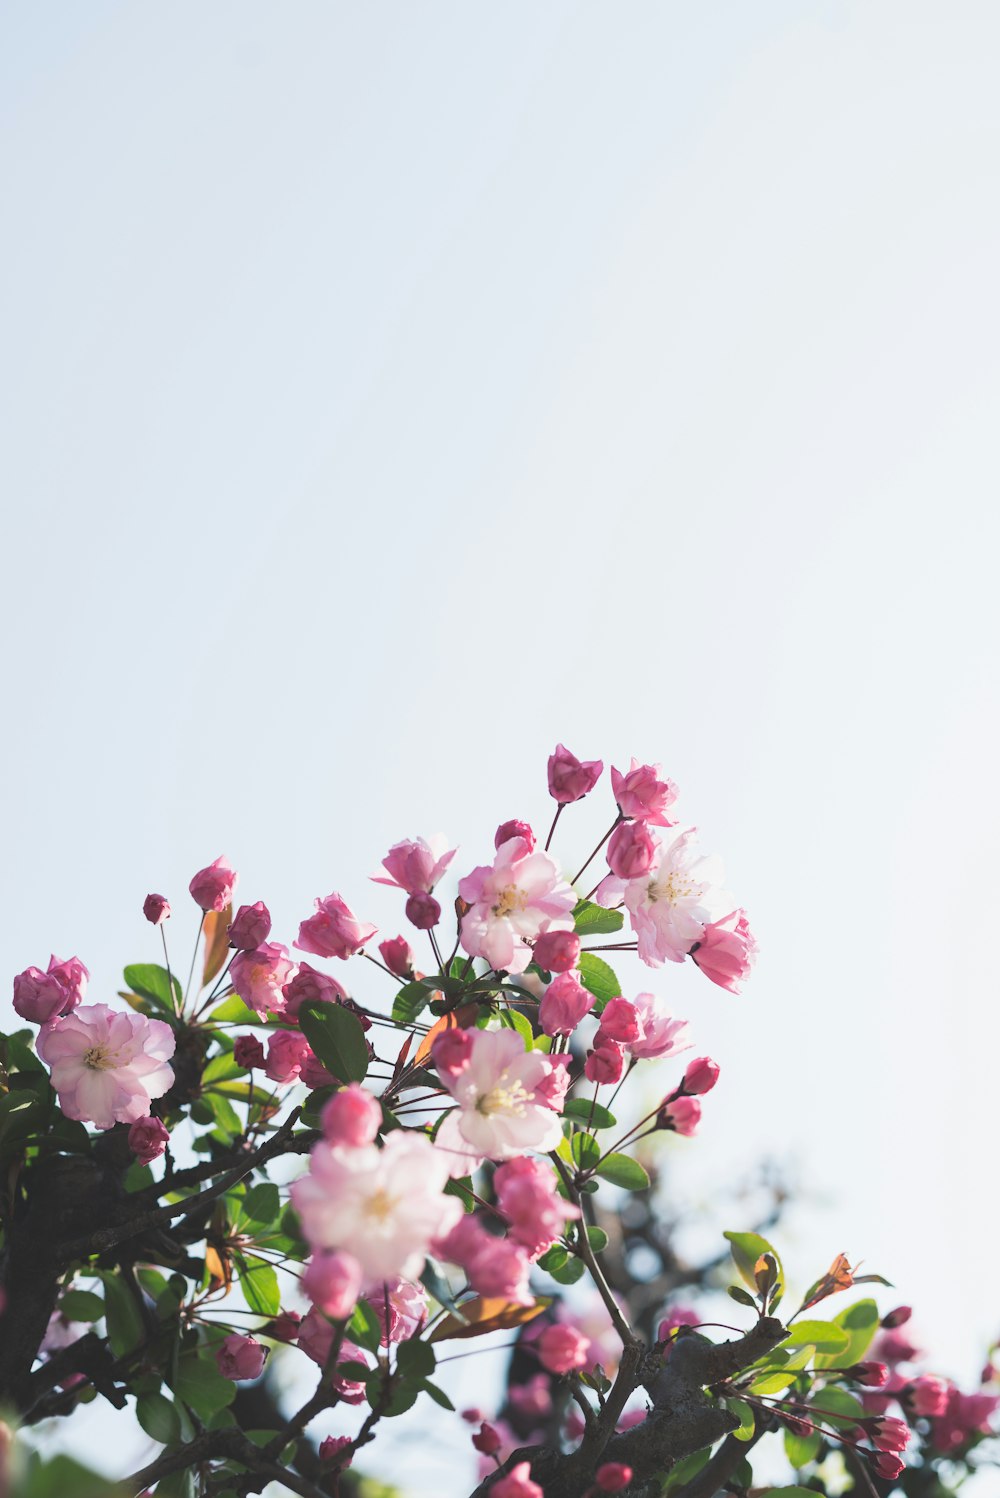 flores brancas e cor-de-rosa